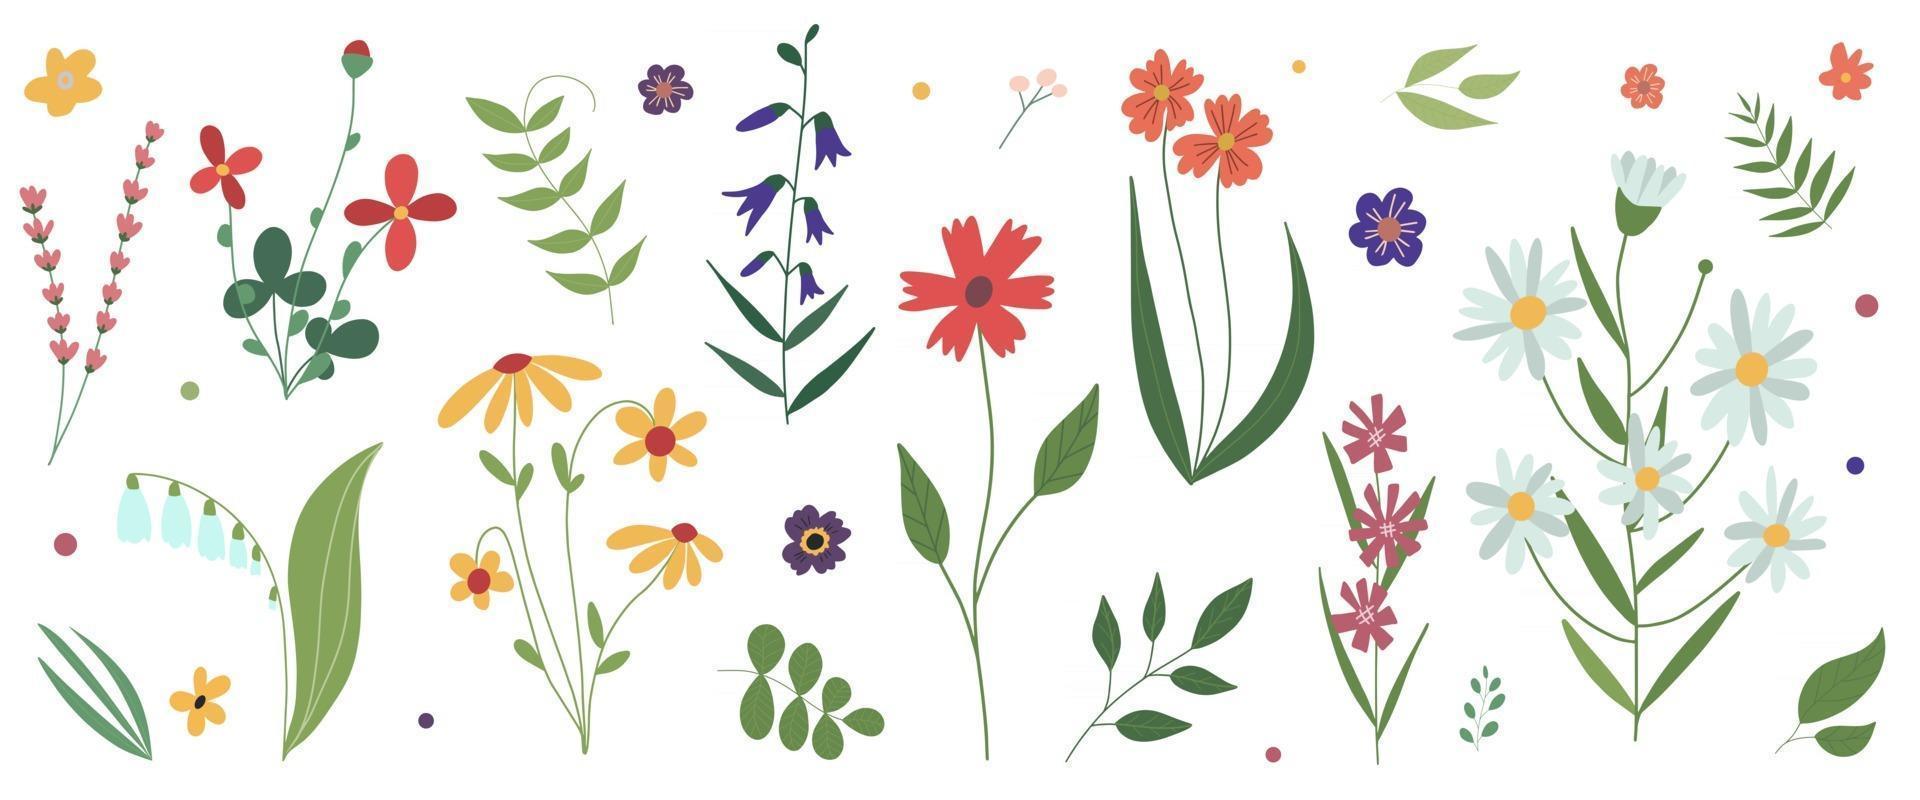 raccolta di fiori selvatici prato fiorito piatto colorato botanico illustrazione vettoriale fiori isolati su sfondo bianco set di elementi decorativi di disegno floreale